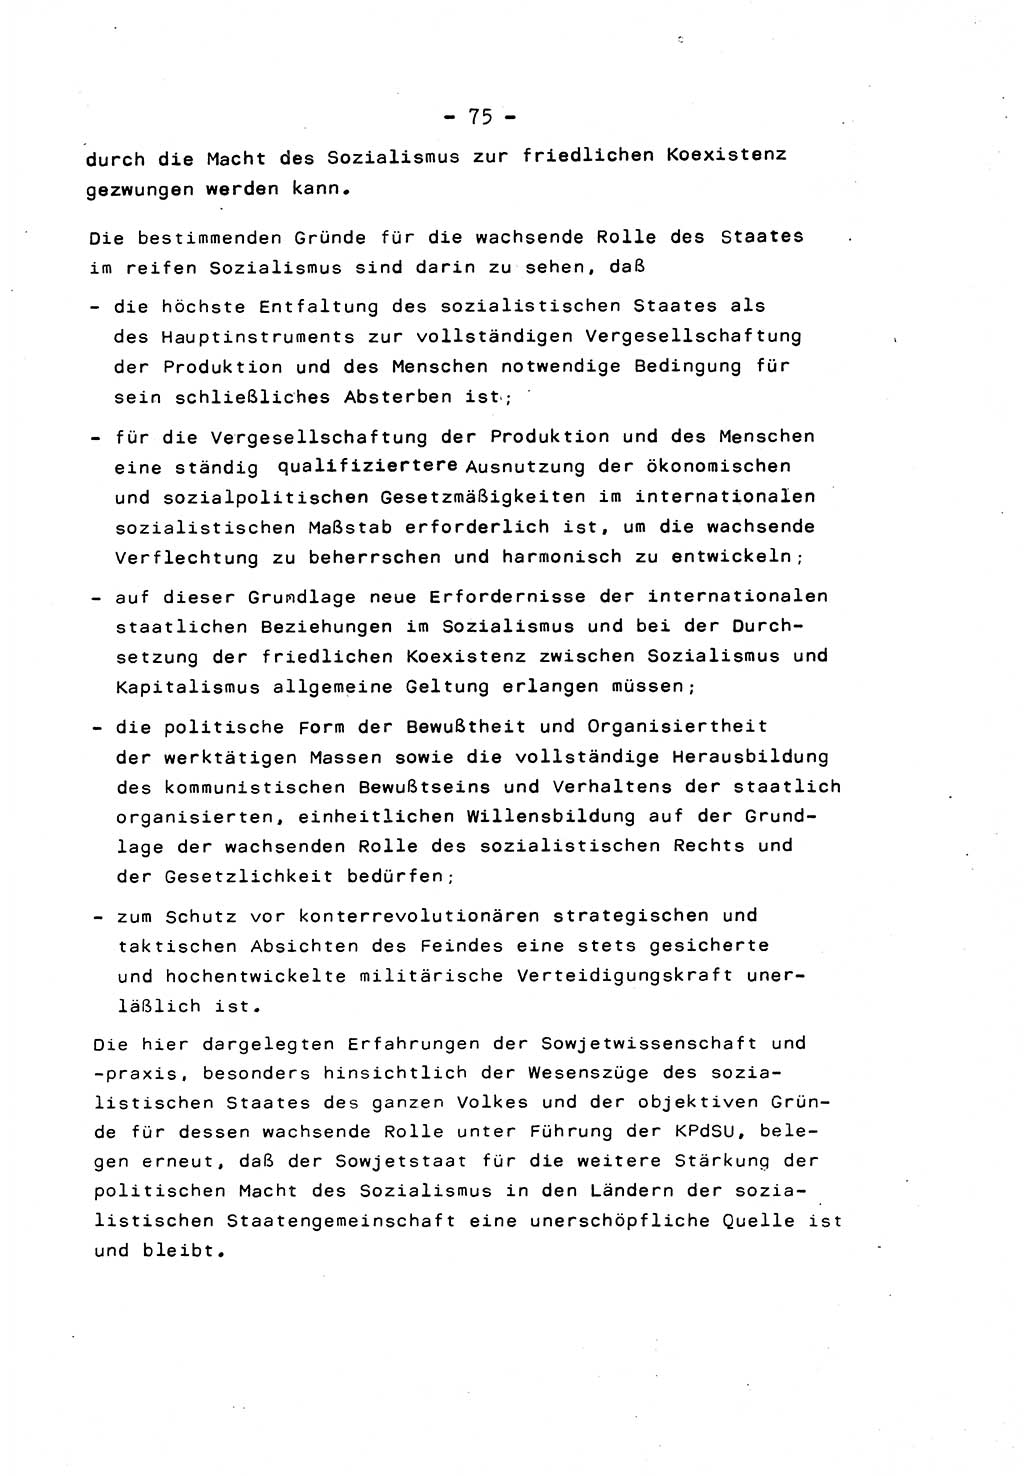 Marxistisch-leninistische Staats- und Rechtstheorie [Deutsche Demokratische Republik (DDR)] 1975, Seite 75 (ML St.-R.-Th. DDR 1975, S. 75)